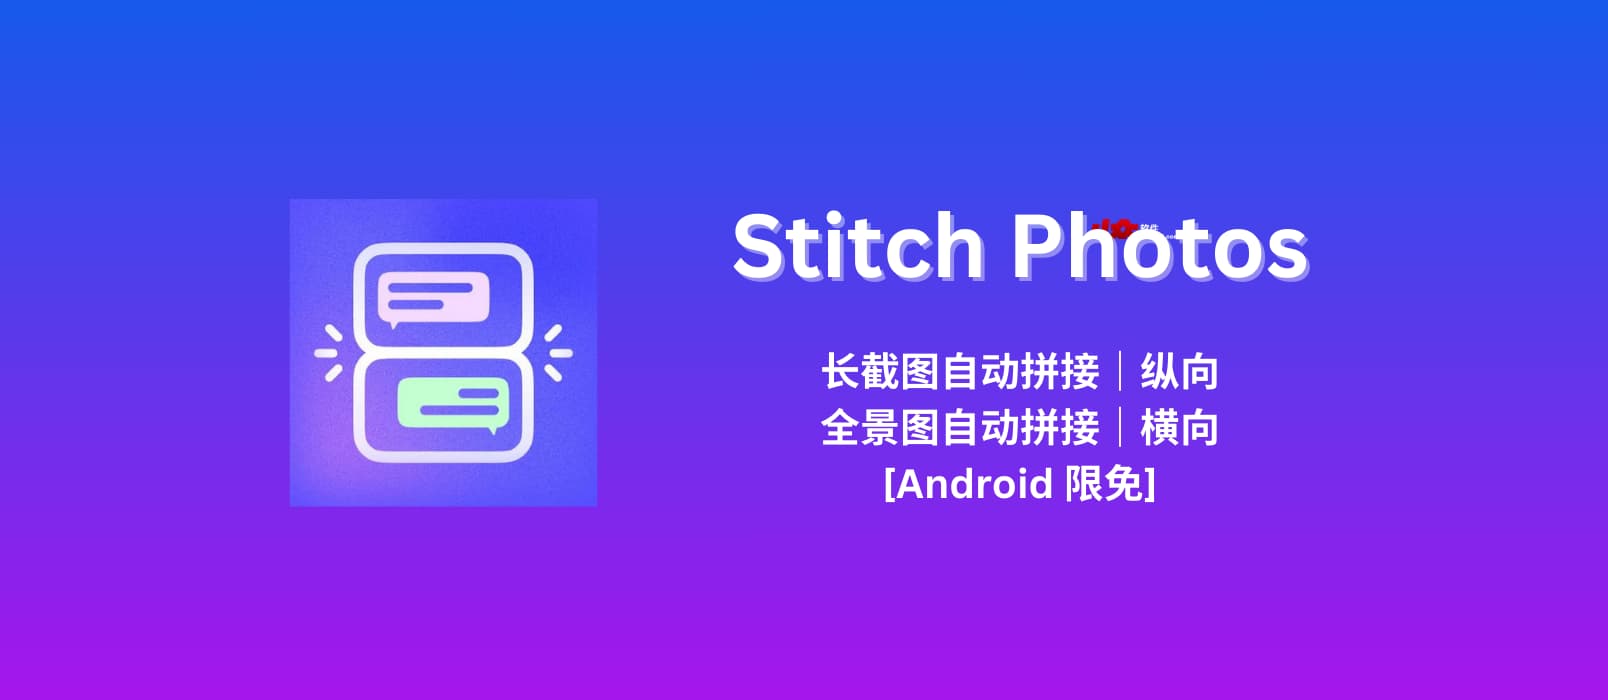 Stitch Photos – 长截图自动拼接工具｜全景照片自动拼接工具[Android 限免]